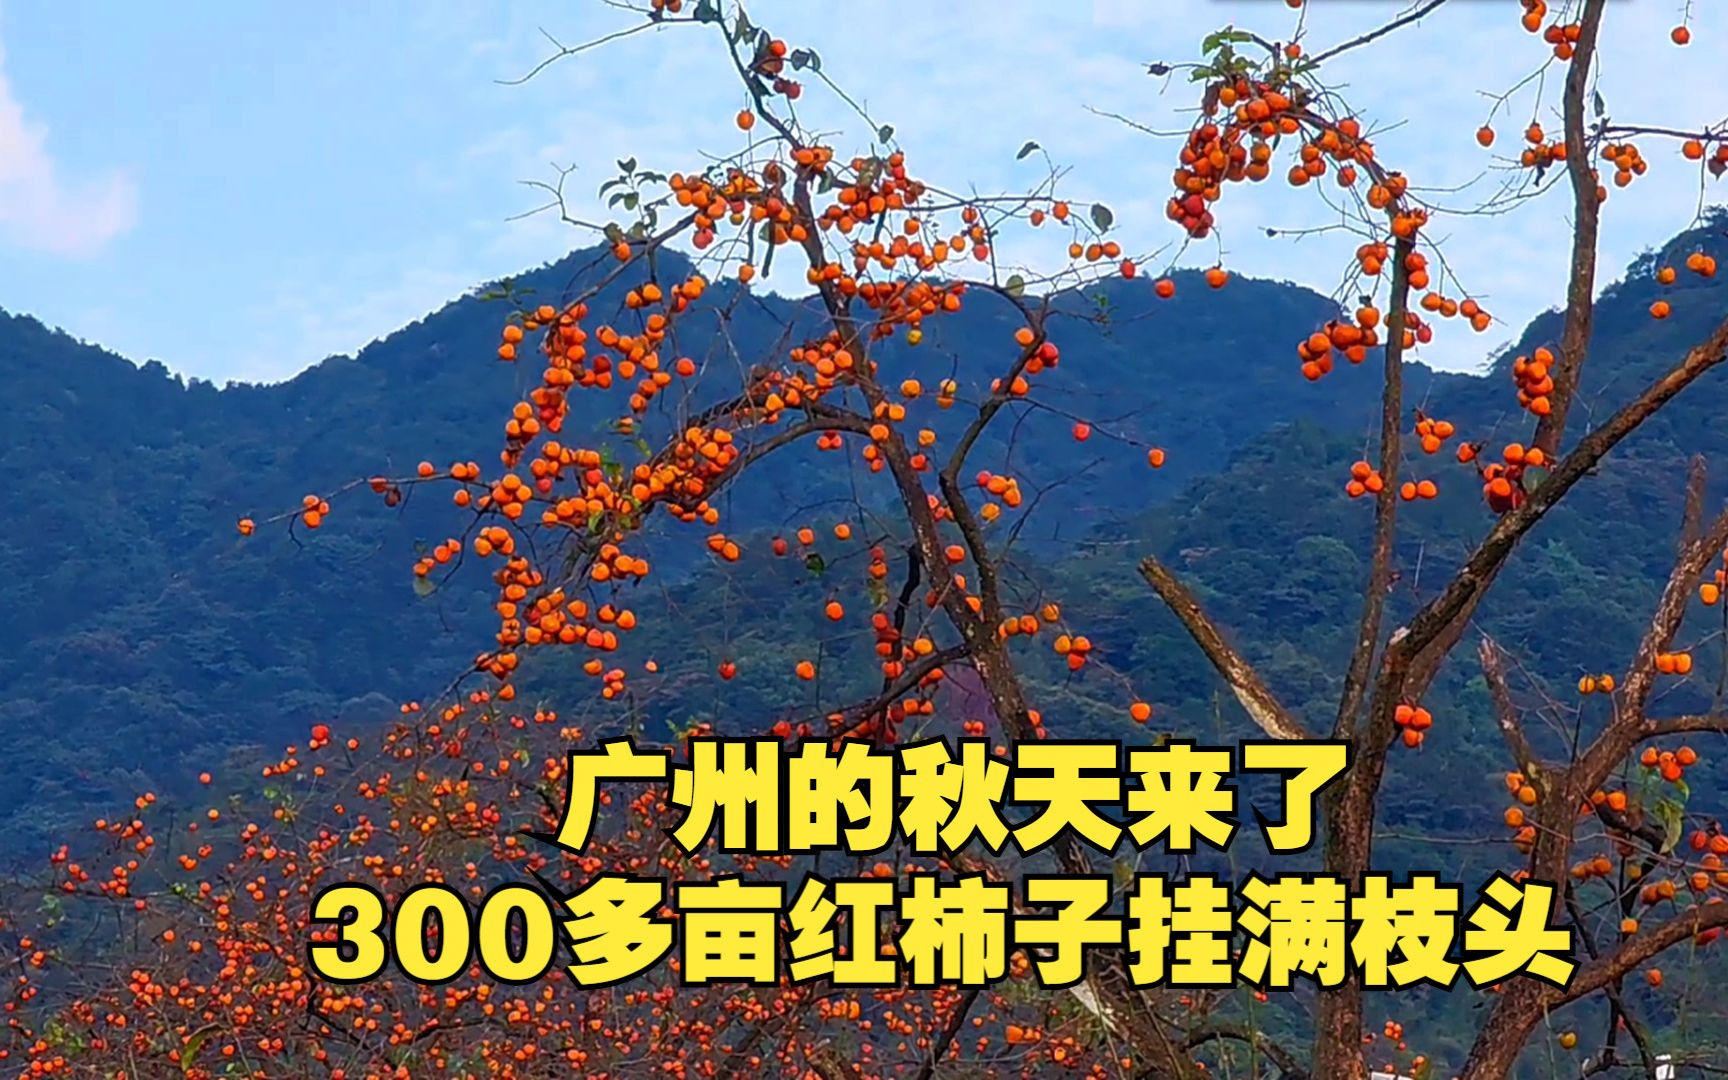 广州的秋天来了，桂峰村300多亩红柿子挂满枝头，红红火火相当喜人